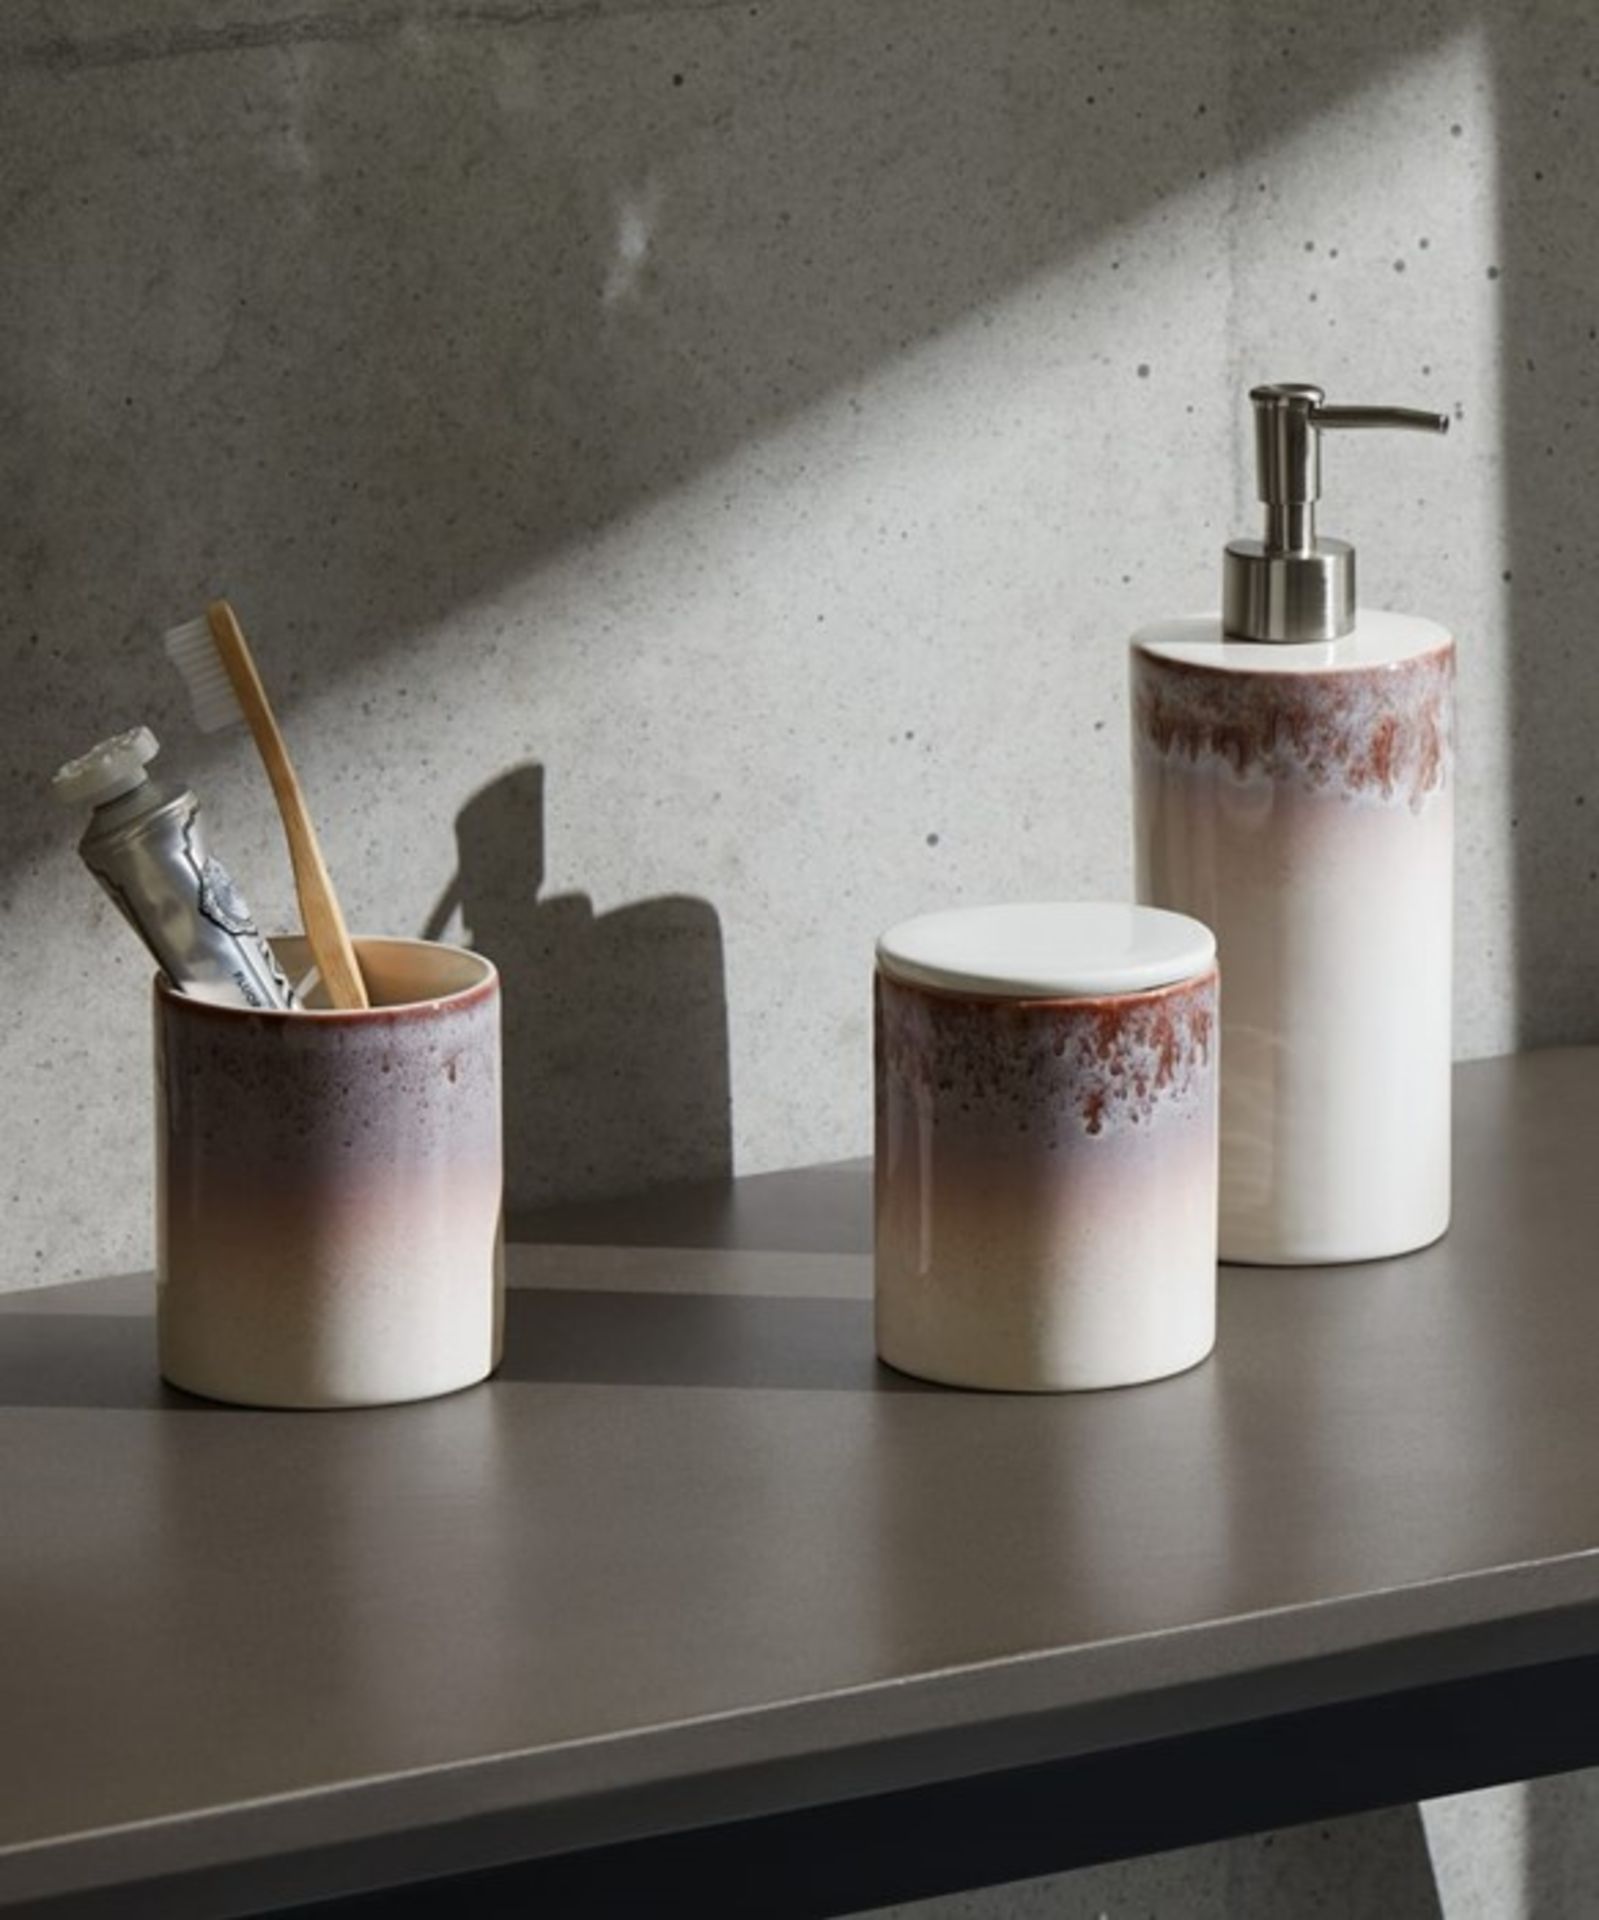 | 1x|Made.com Athena Reactive Glaze Ceramic 3 Piece Bathroom Set Pink & White RRP Â£29MAD-